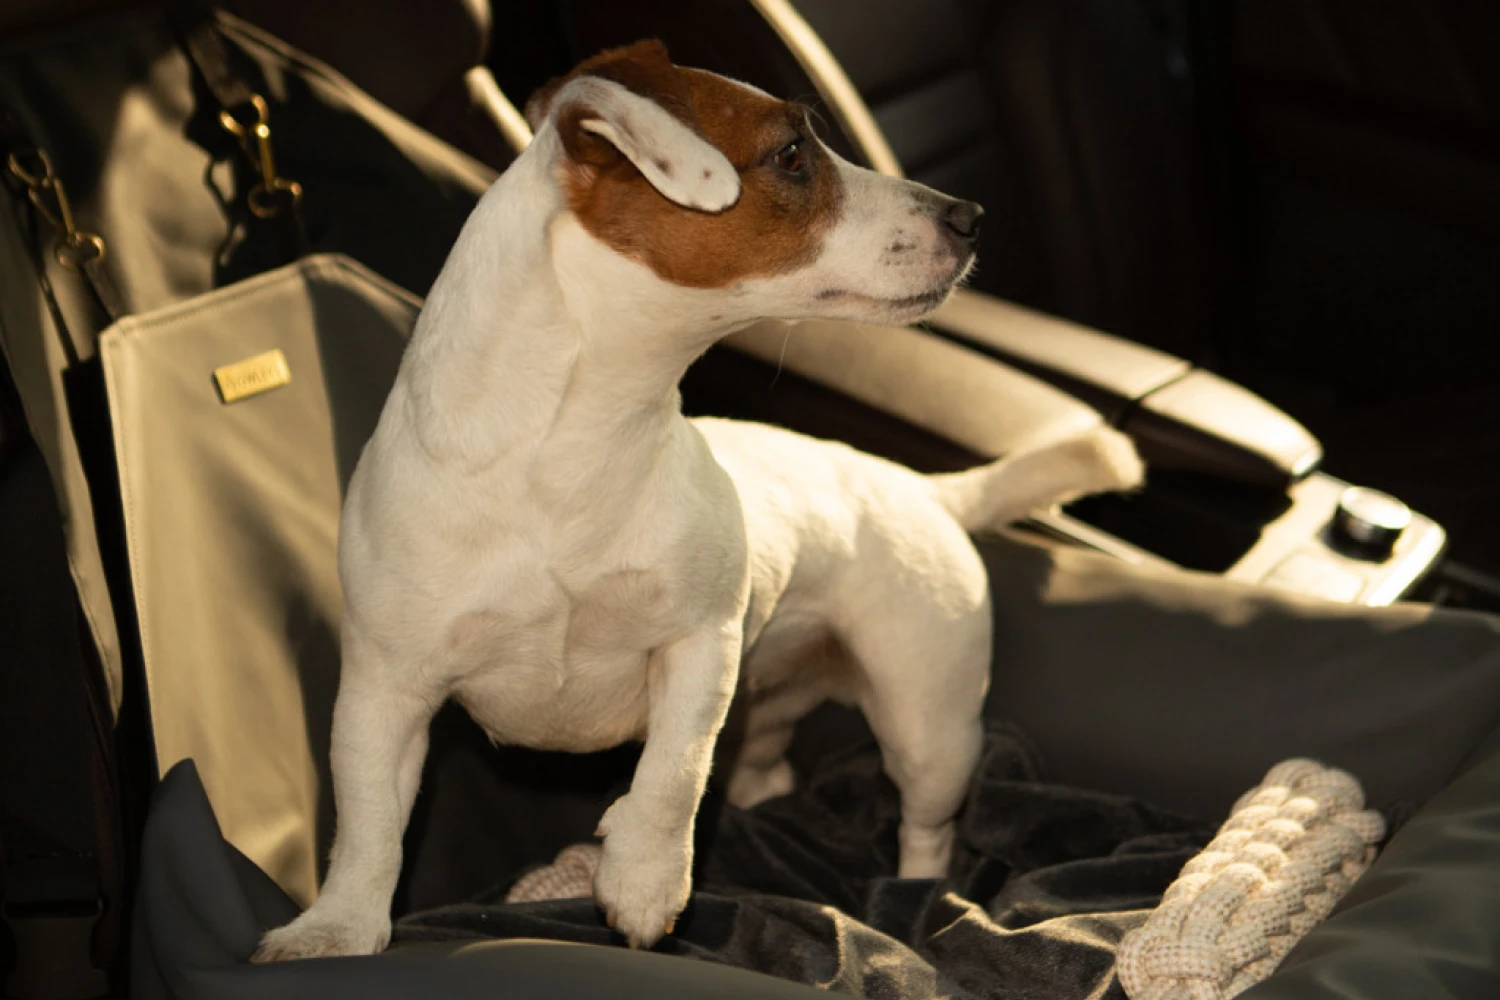 Finnish Spitz Dog Car Seat for Volkswagen Golf